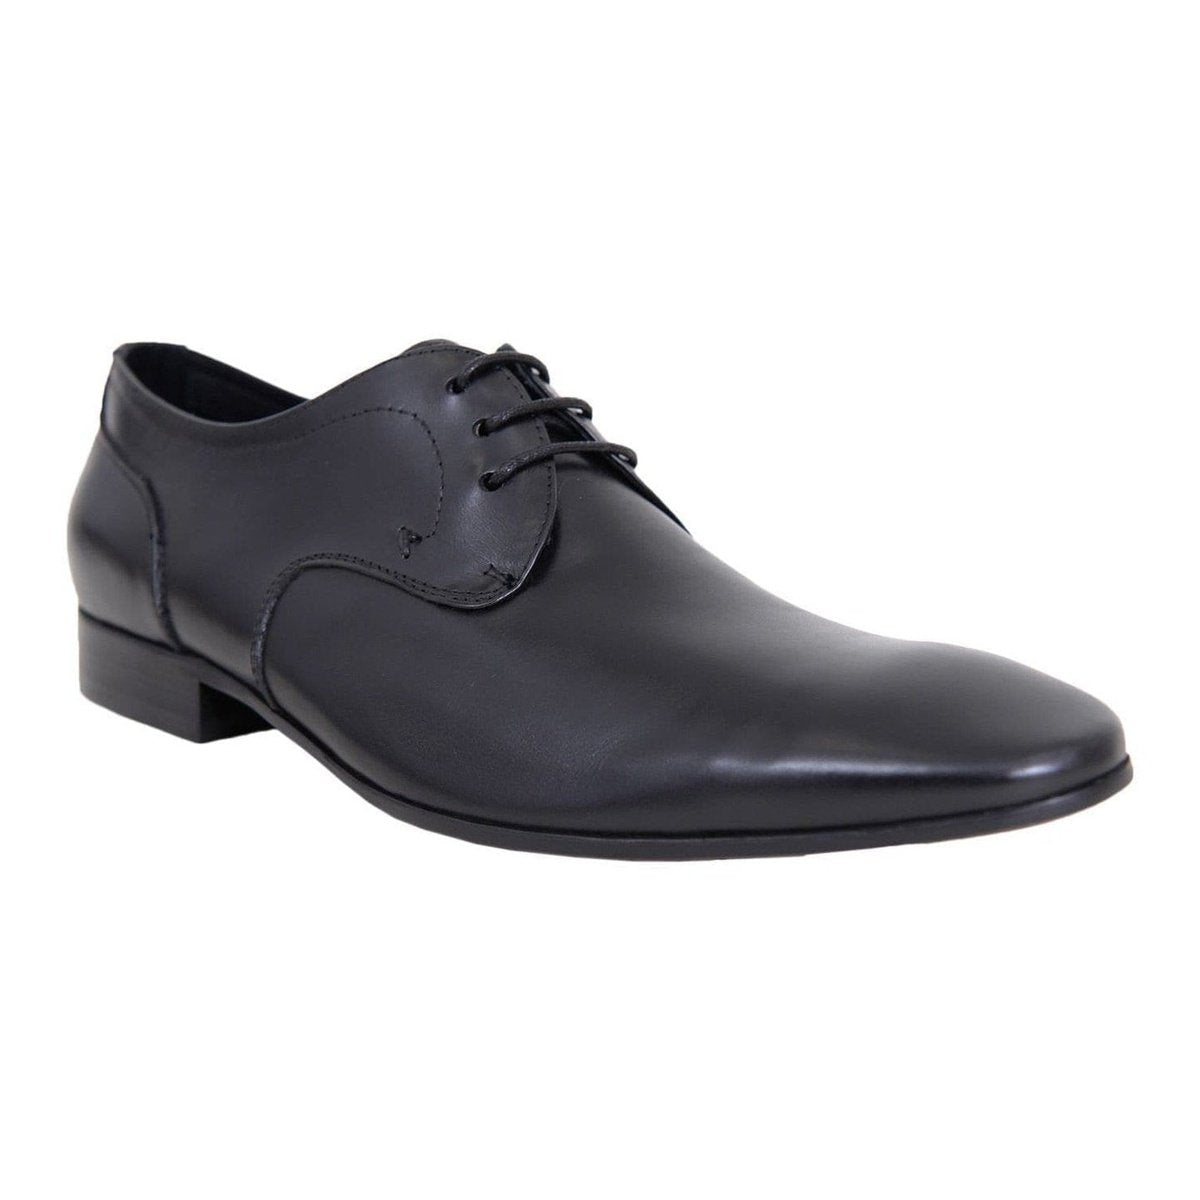 Carrucci Shoes For Amazon 13 D-M Carrucci Mens Black Plain Toe Oxford Leather Dress Shoes